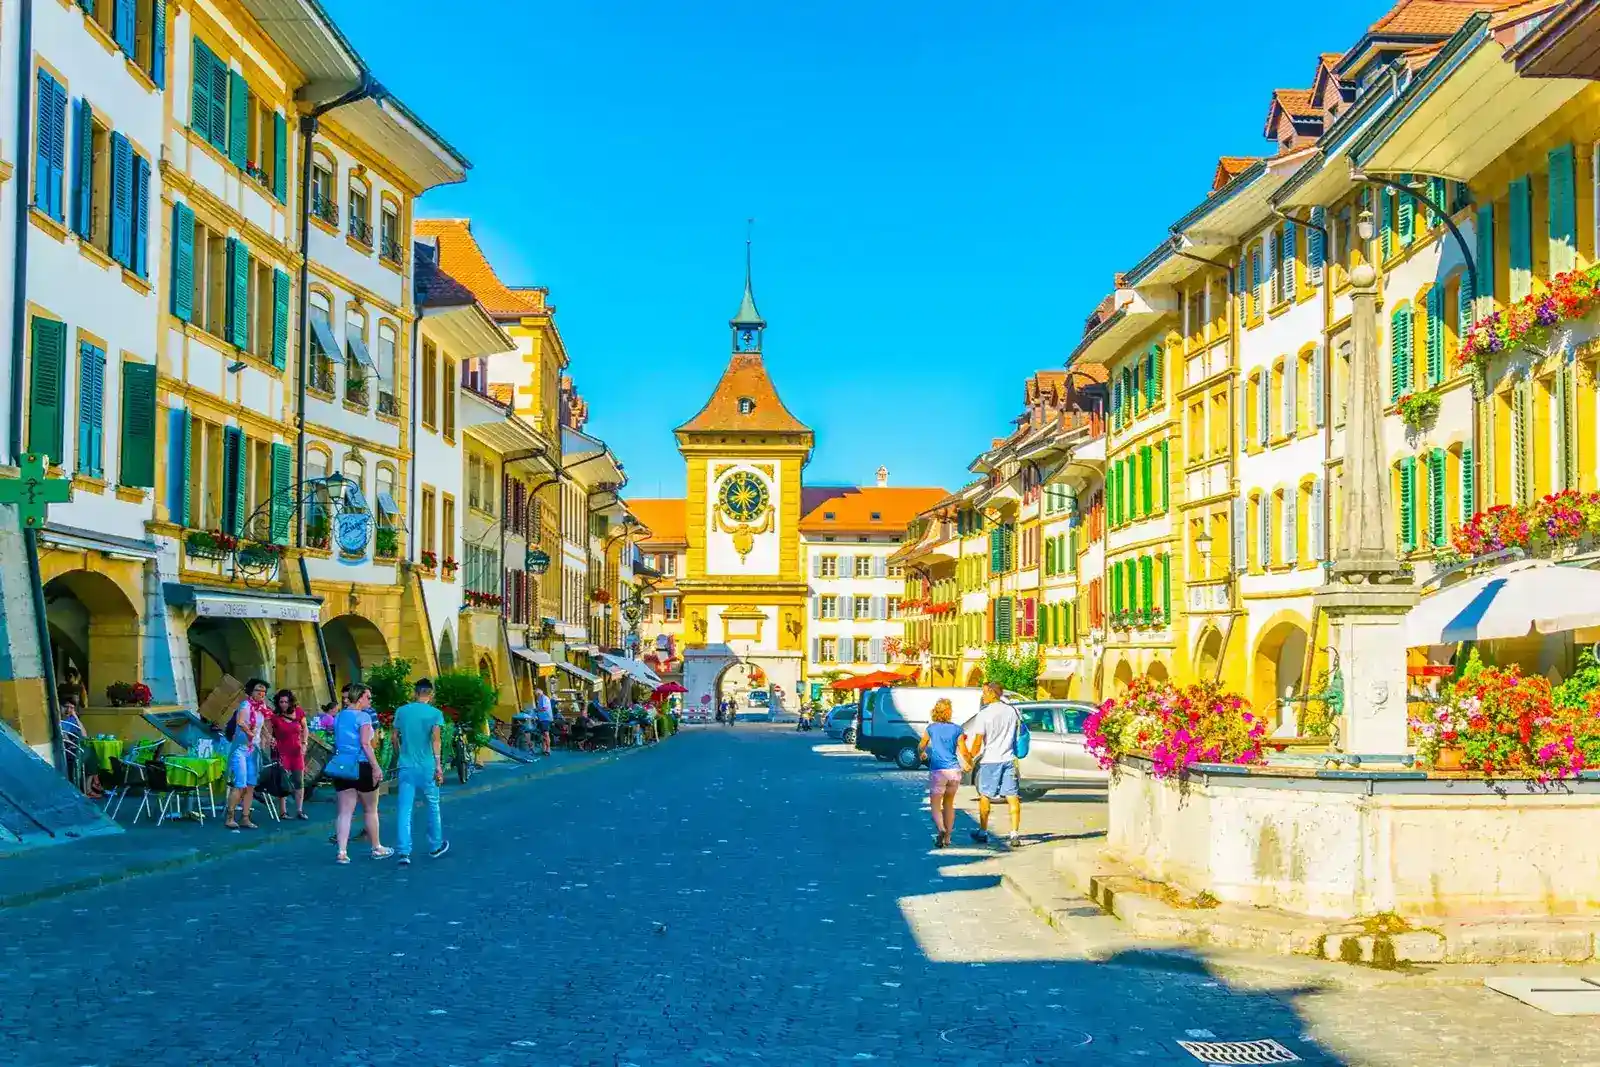 Bern Old Town